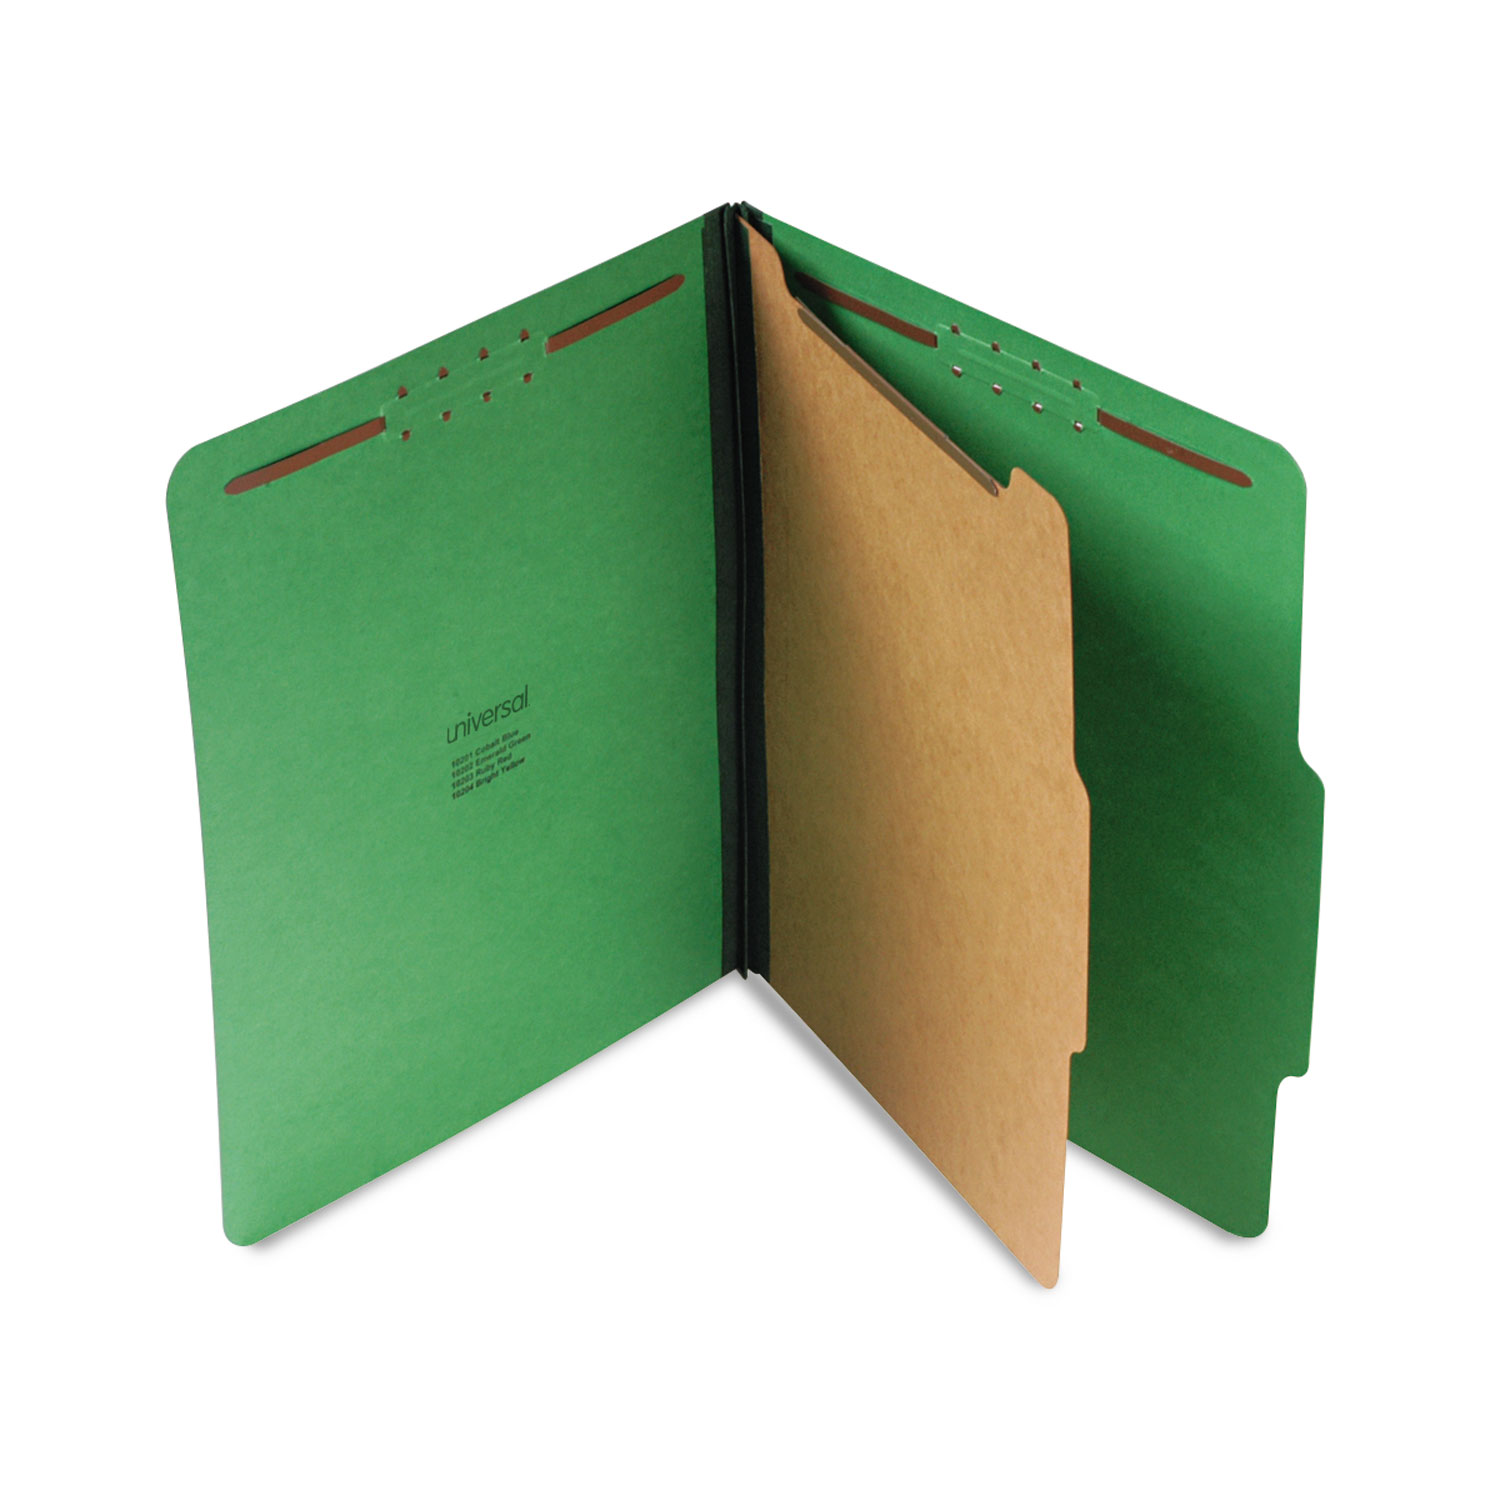  Universal UNV10202 Bright Colored Pressboard Classification Folders, 1 Divider, Letter Size, Emerald Green, 10/Box (UNV10202) 